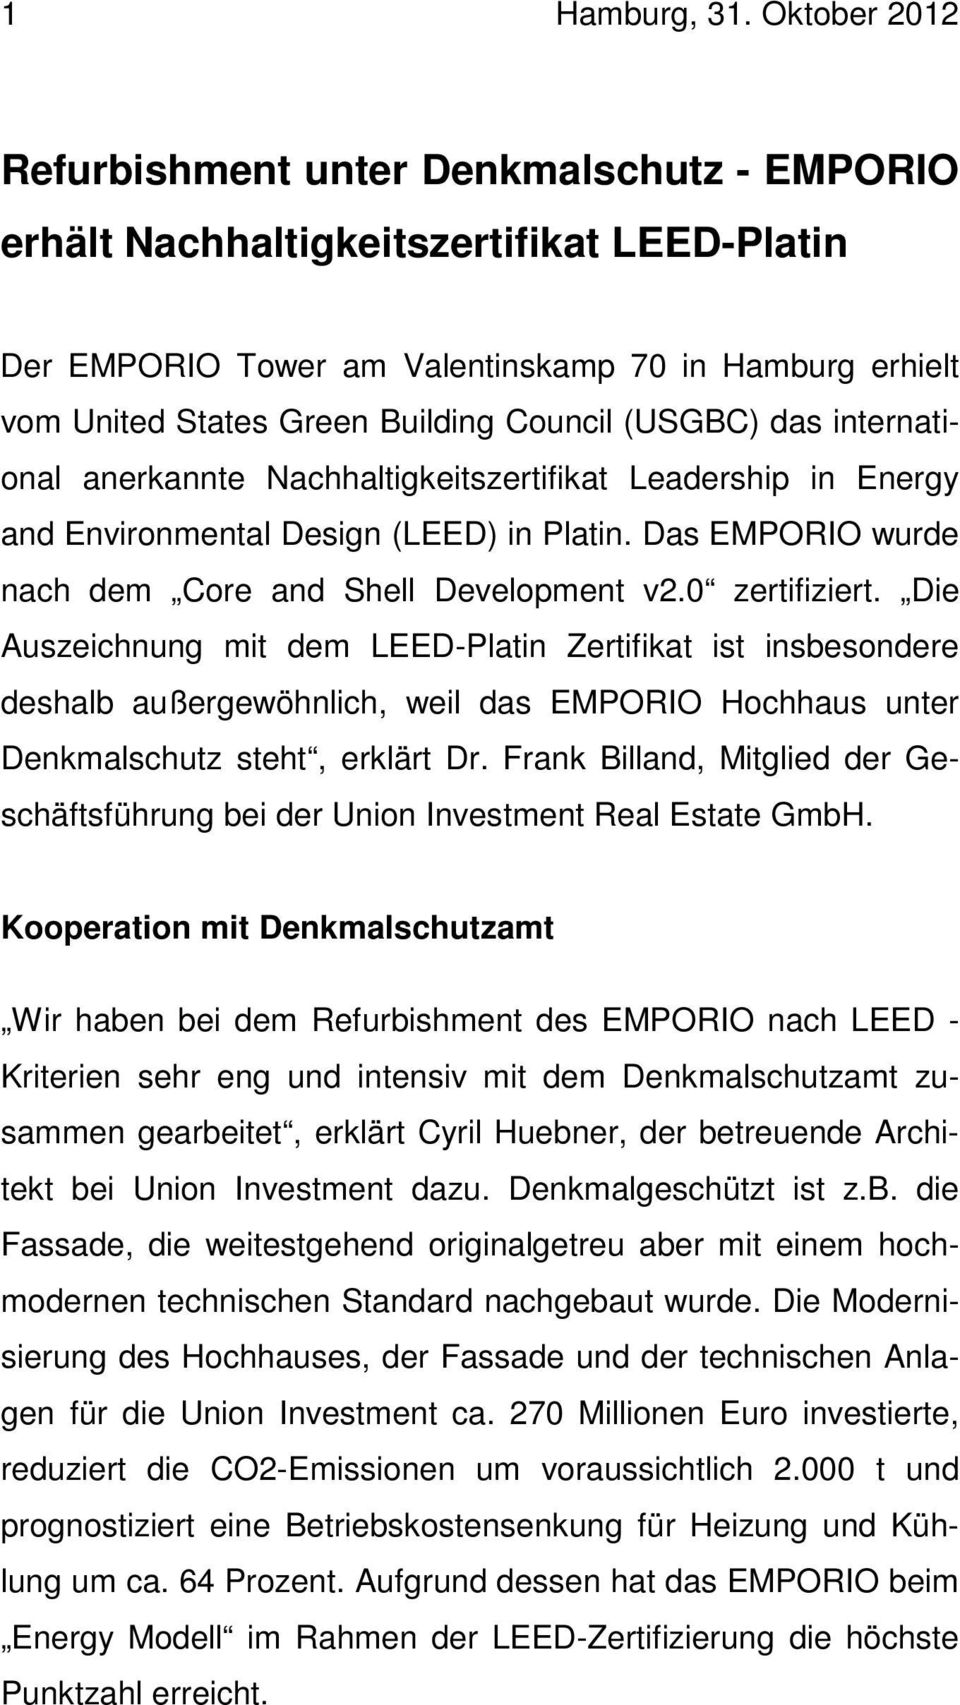 (USGBC) das international anerkannte Nachhaltigkeitszertifikat Leadership in Energy and Environmental Design (LEED) in Platin. Das EMPORIO wurde nach dem Core and Shell Development v2.0 zertifiziert.